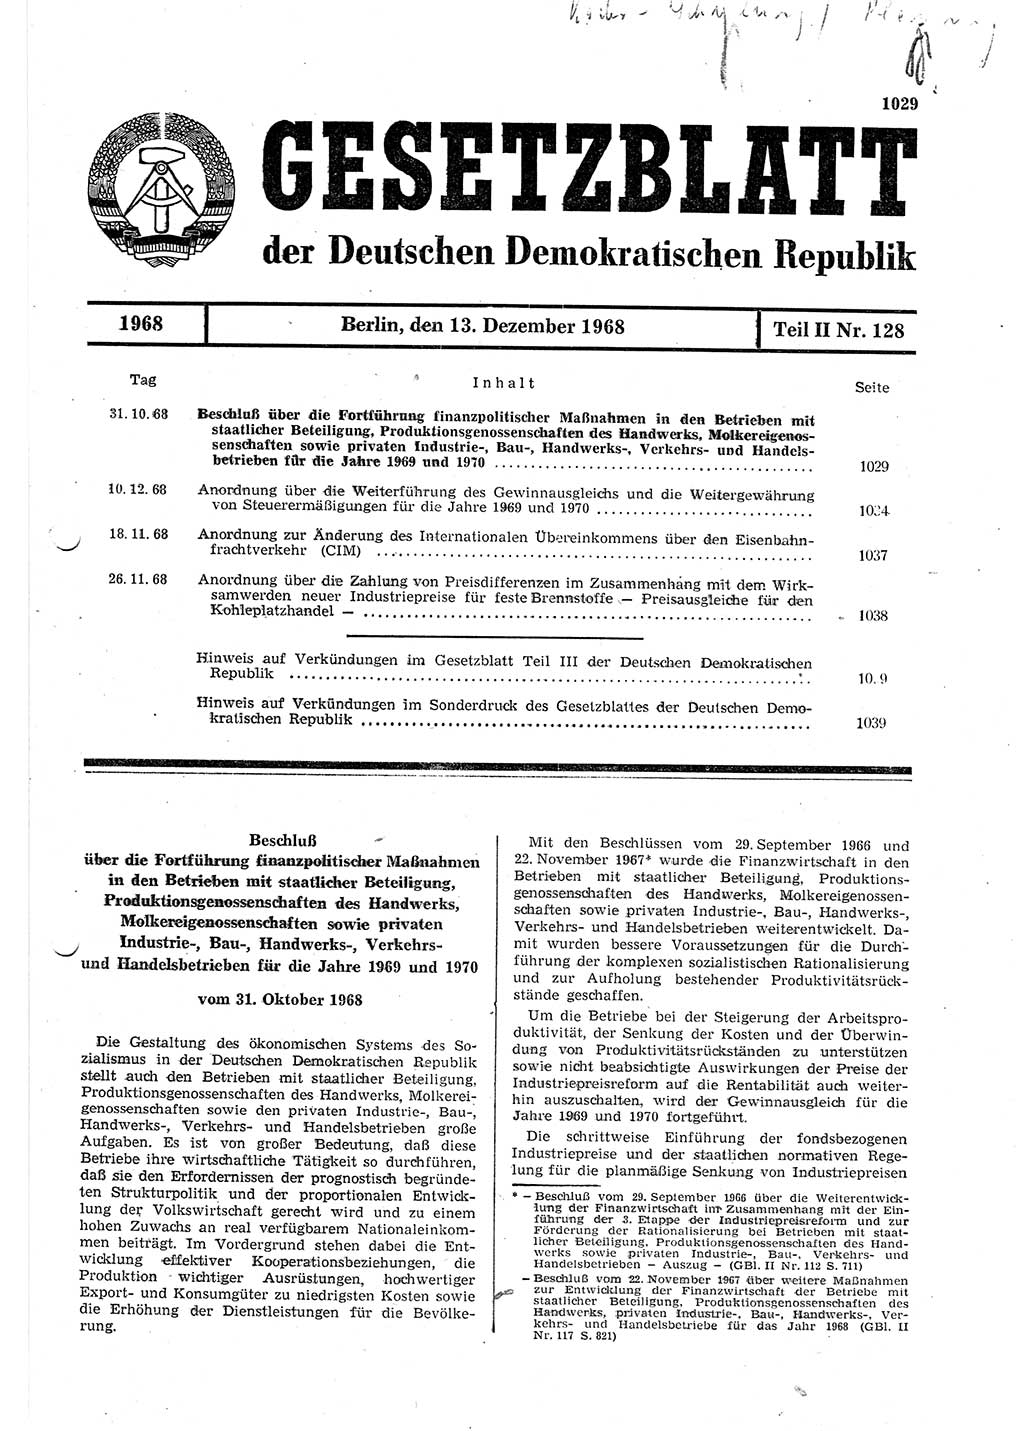 Gesetzblatt (GBl.) der Deutschen Demokratischen Republik (DDR) Teil ⅠⅠ 1968, Seite 1029 (GBl. DDR ⅠⅠ 1968, S. 1029)